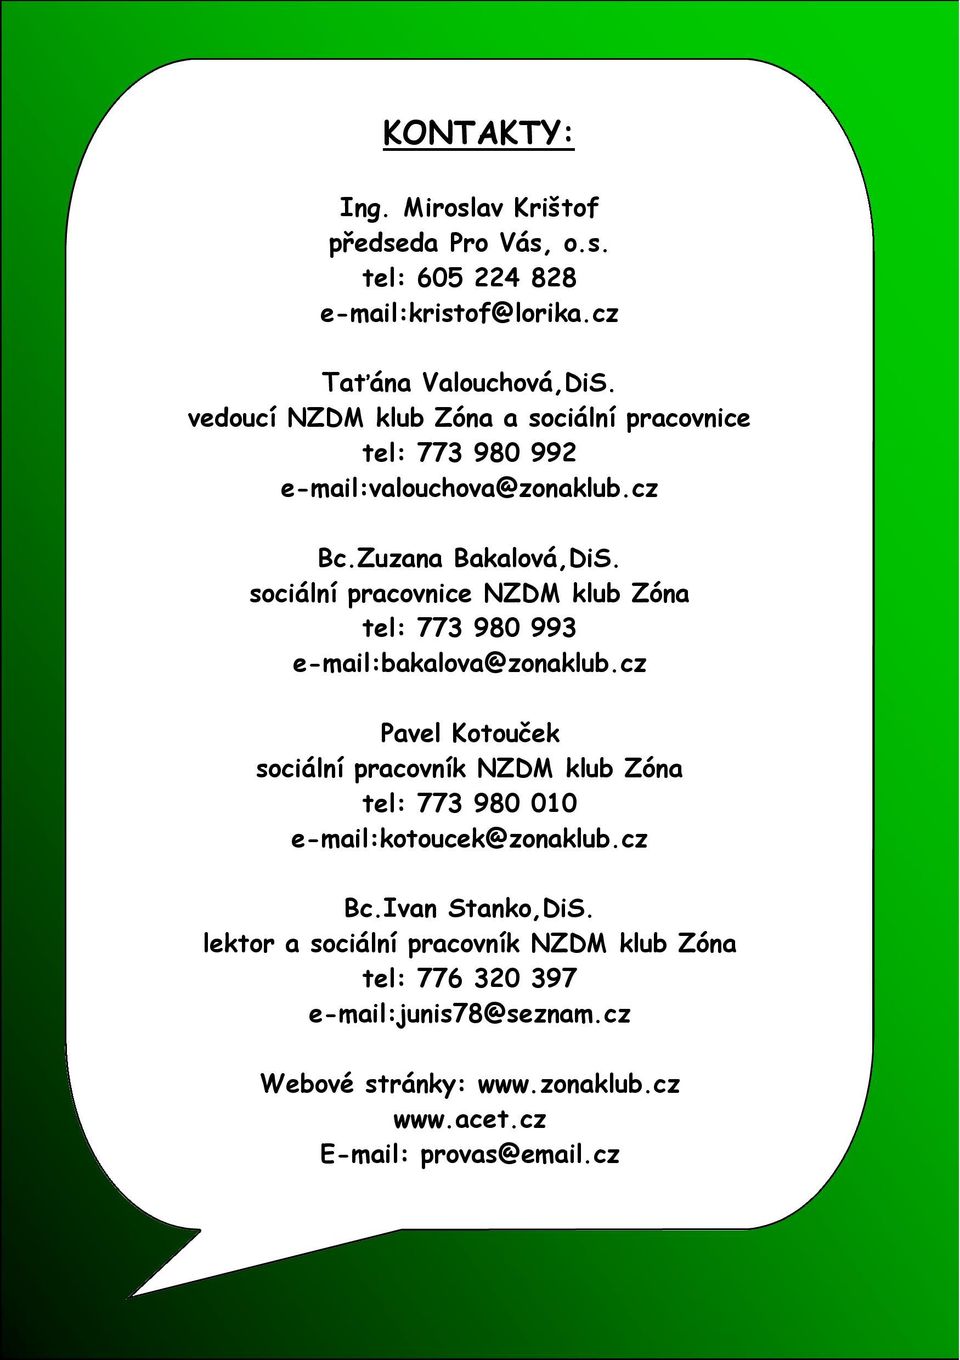 sociální pracovnice NZDM klub Zóna tel: 773 980 993 e-mail:bakalova@zonaklub.